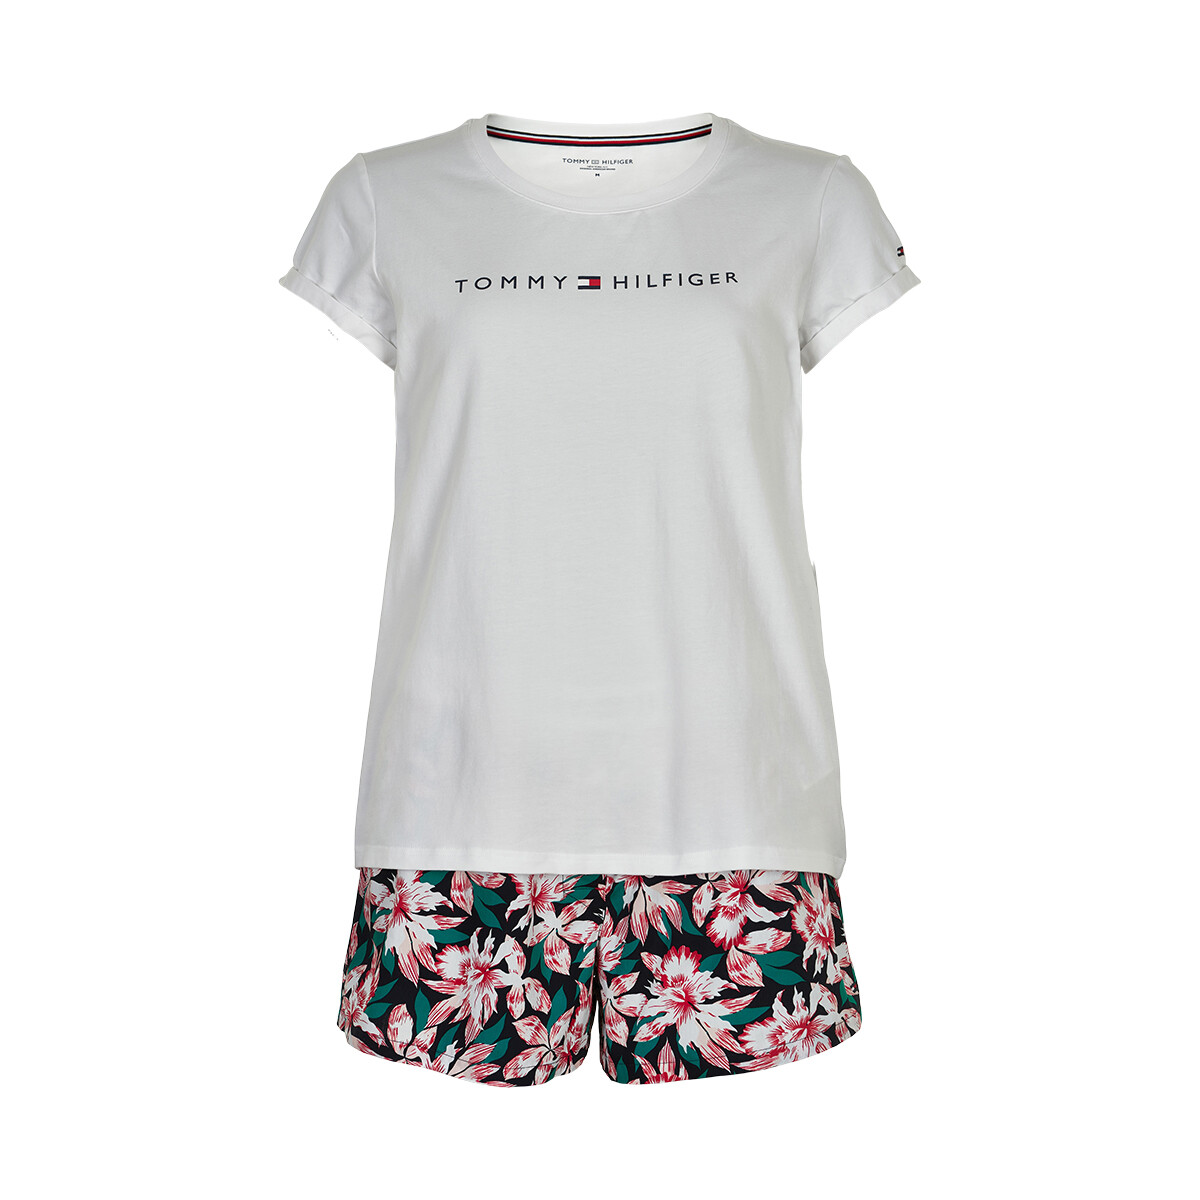 Tommy Hilfiger Lingeri Pyjamas, Farbe: Weiß/tropical Floral, Größe: XS, Damen von Tommy hilfiger